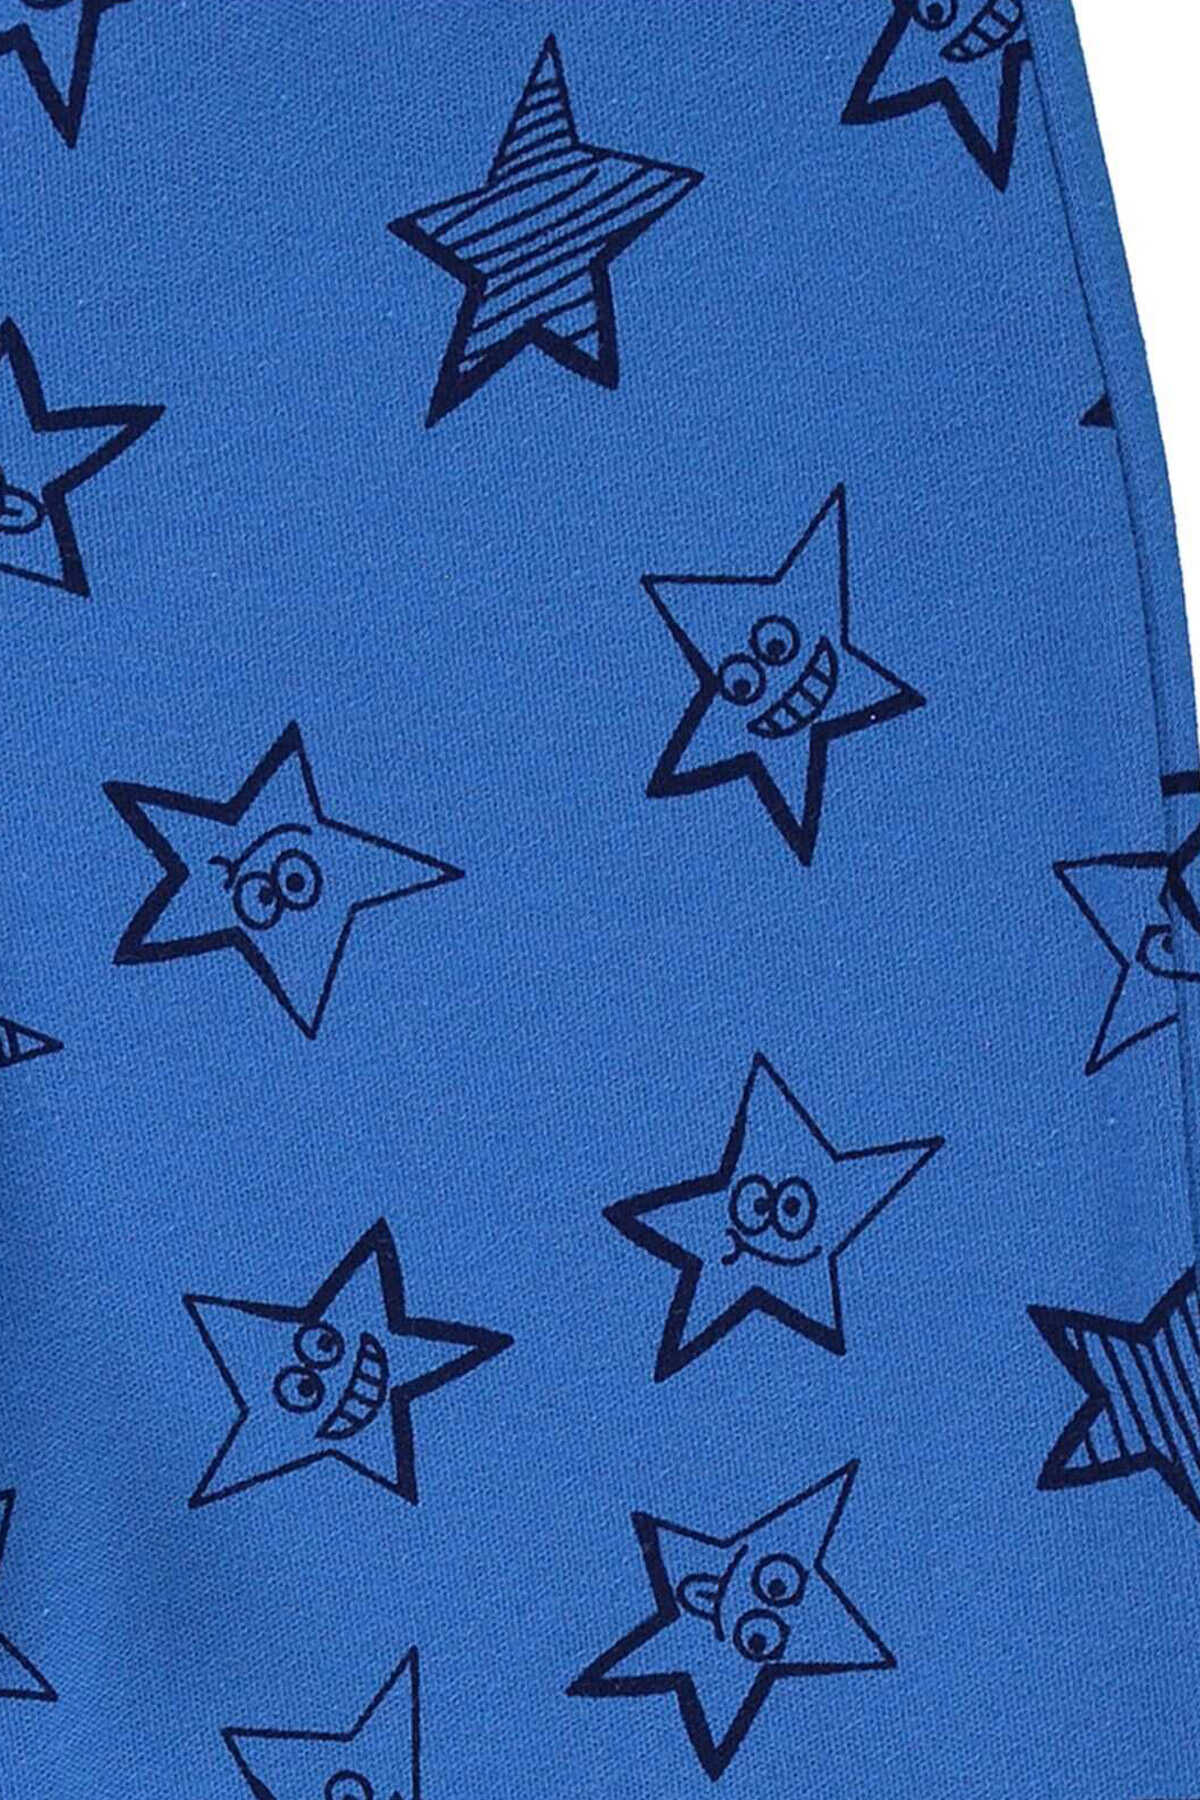 شلوار راحتی پسرانه طرح ستاره دمپا گت 2 - 5 ساله آبی برند Civil Boys